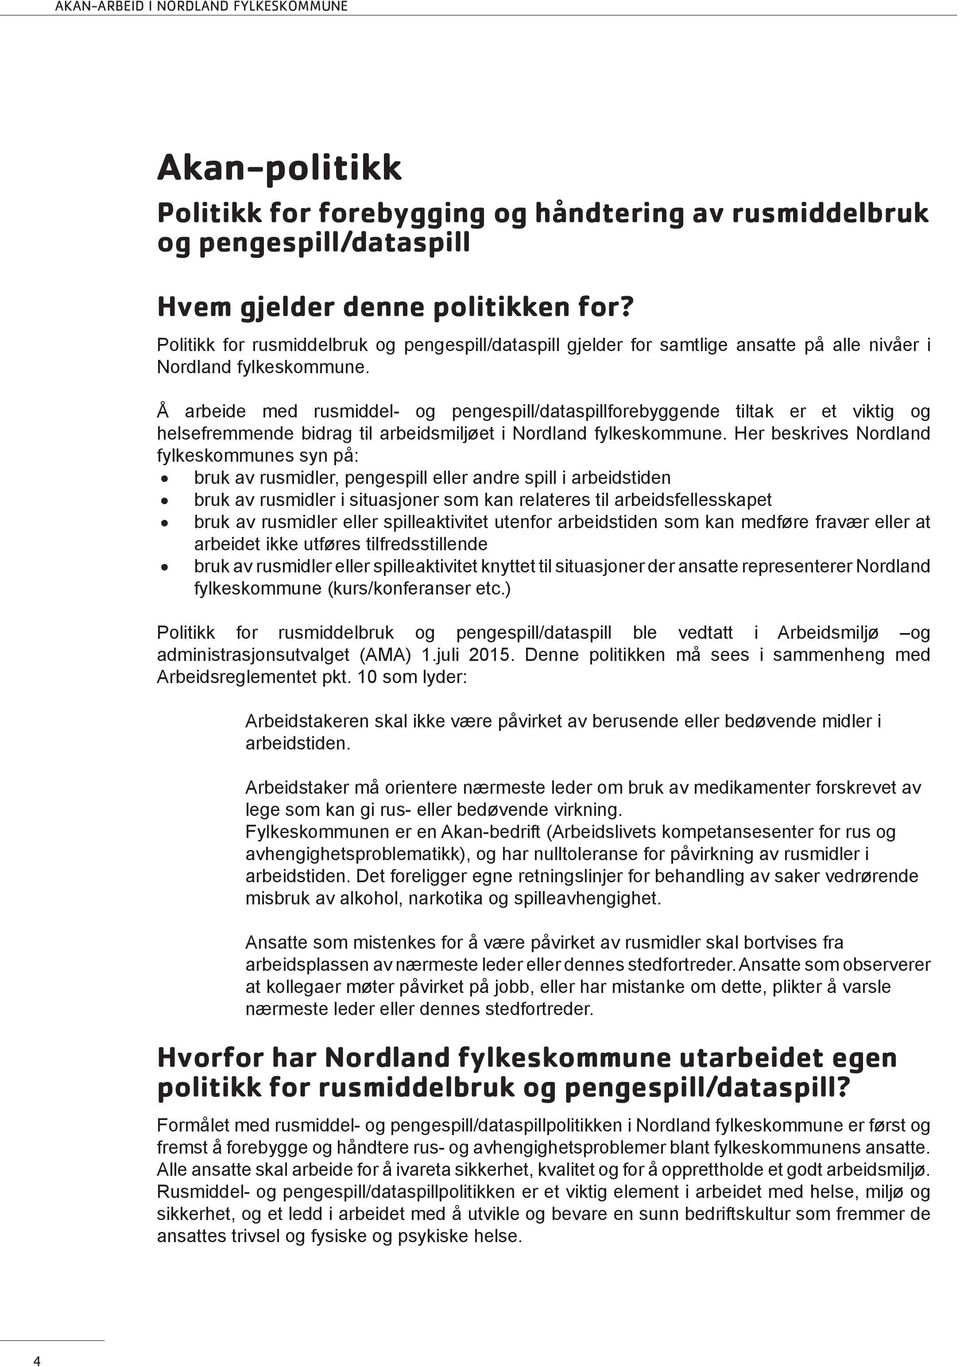 Å arbeide med rusmiddel- og pengespill/dataspillforebyggende tiltak er et viktig og helsefremmende bidrag til arbeidsmiljøet i Nordland fylkeskommune.